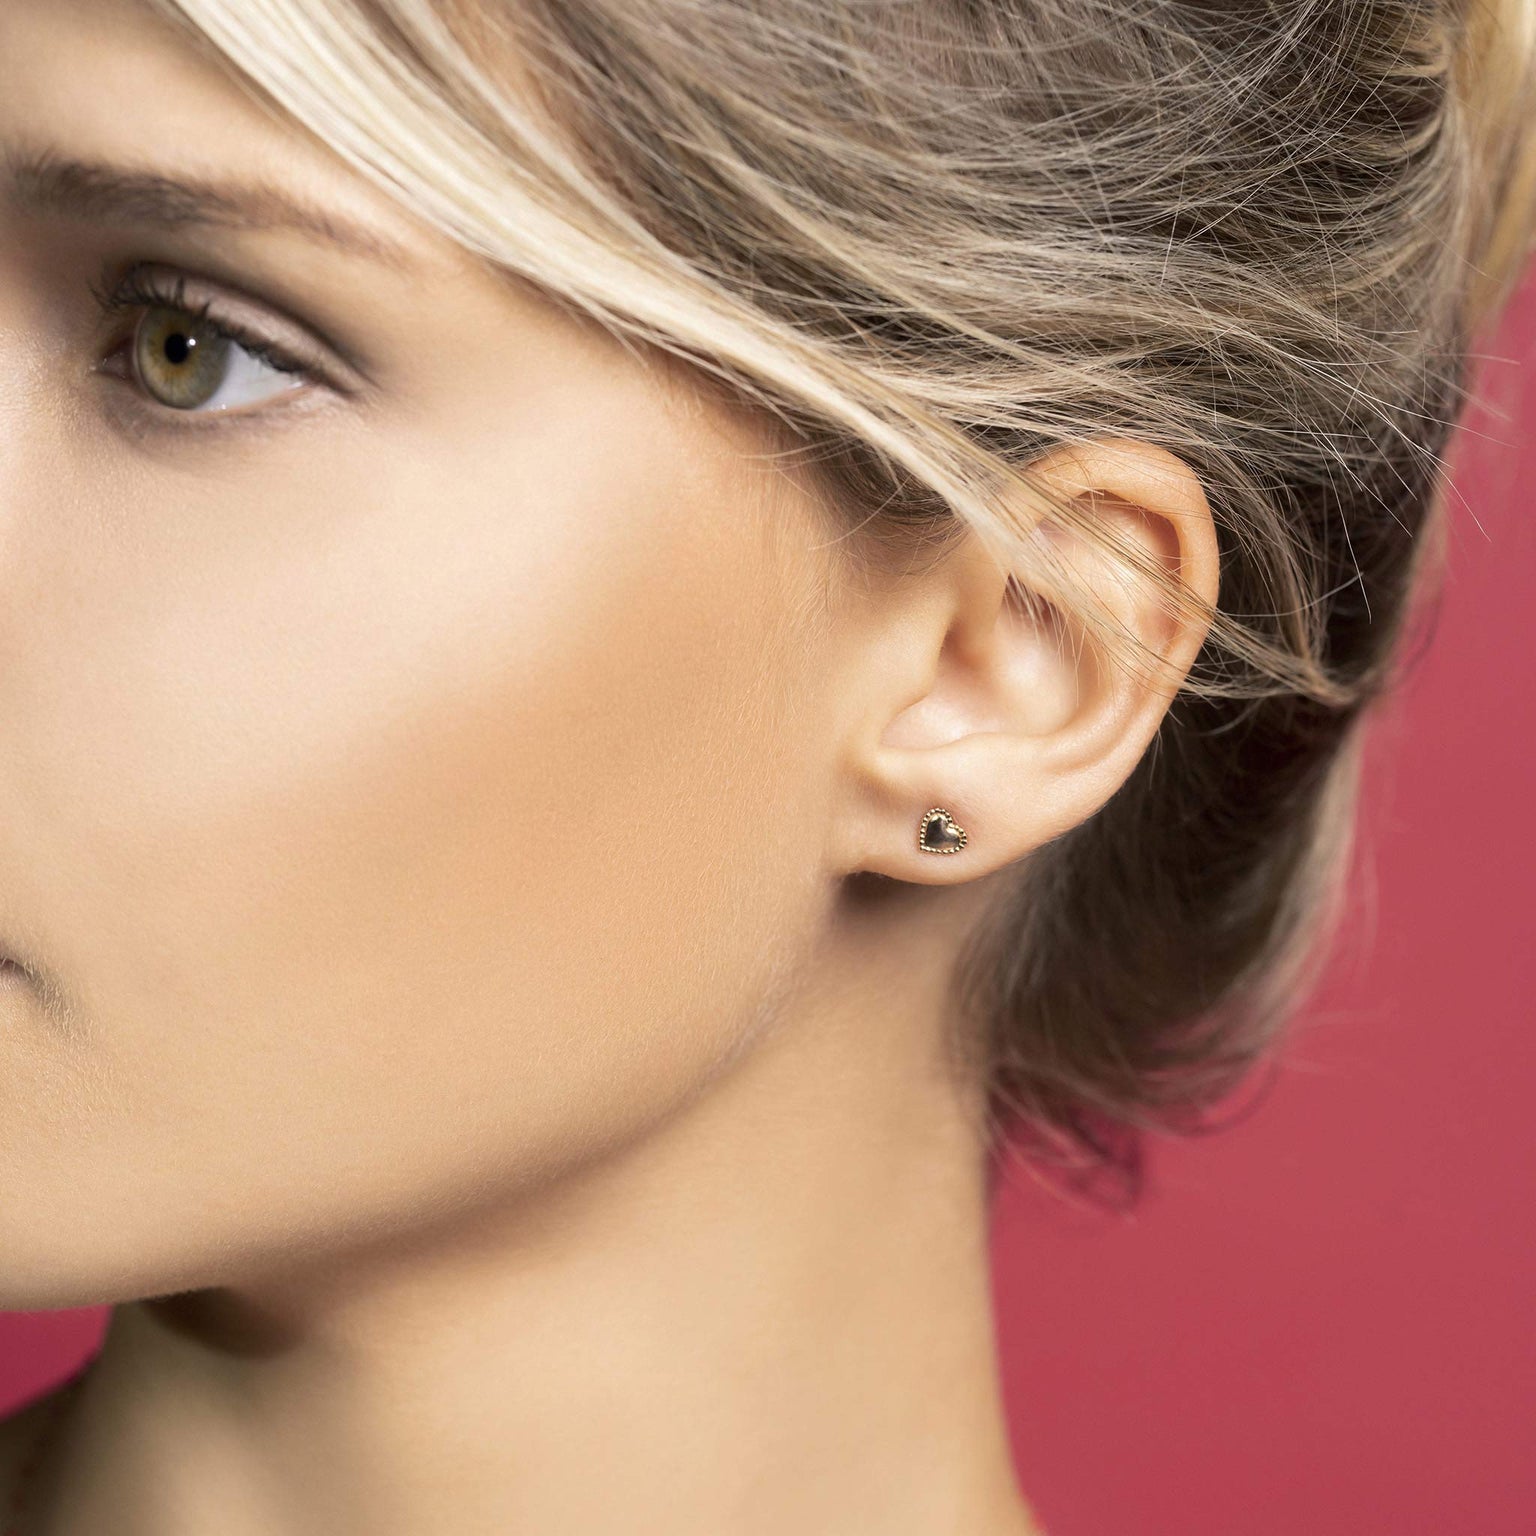 louisa secret rose gold earrings